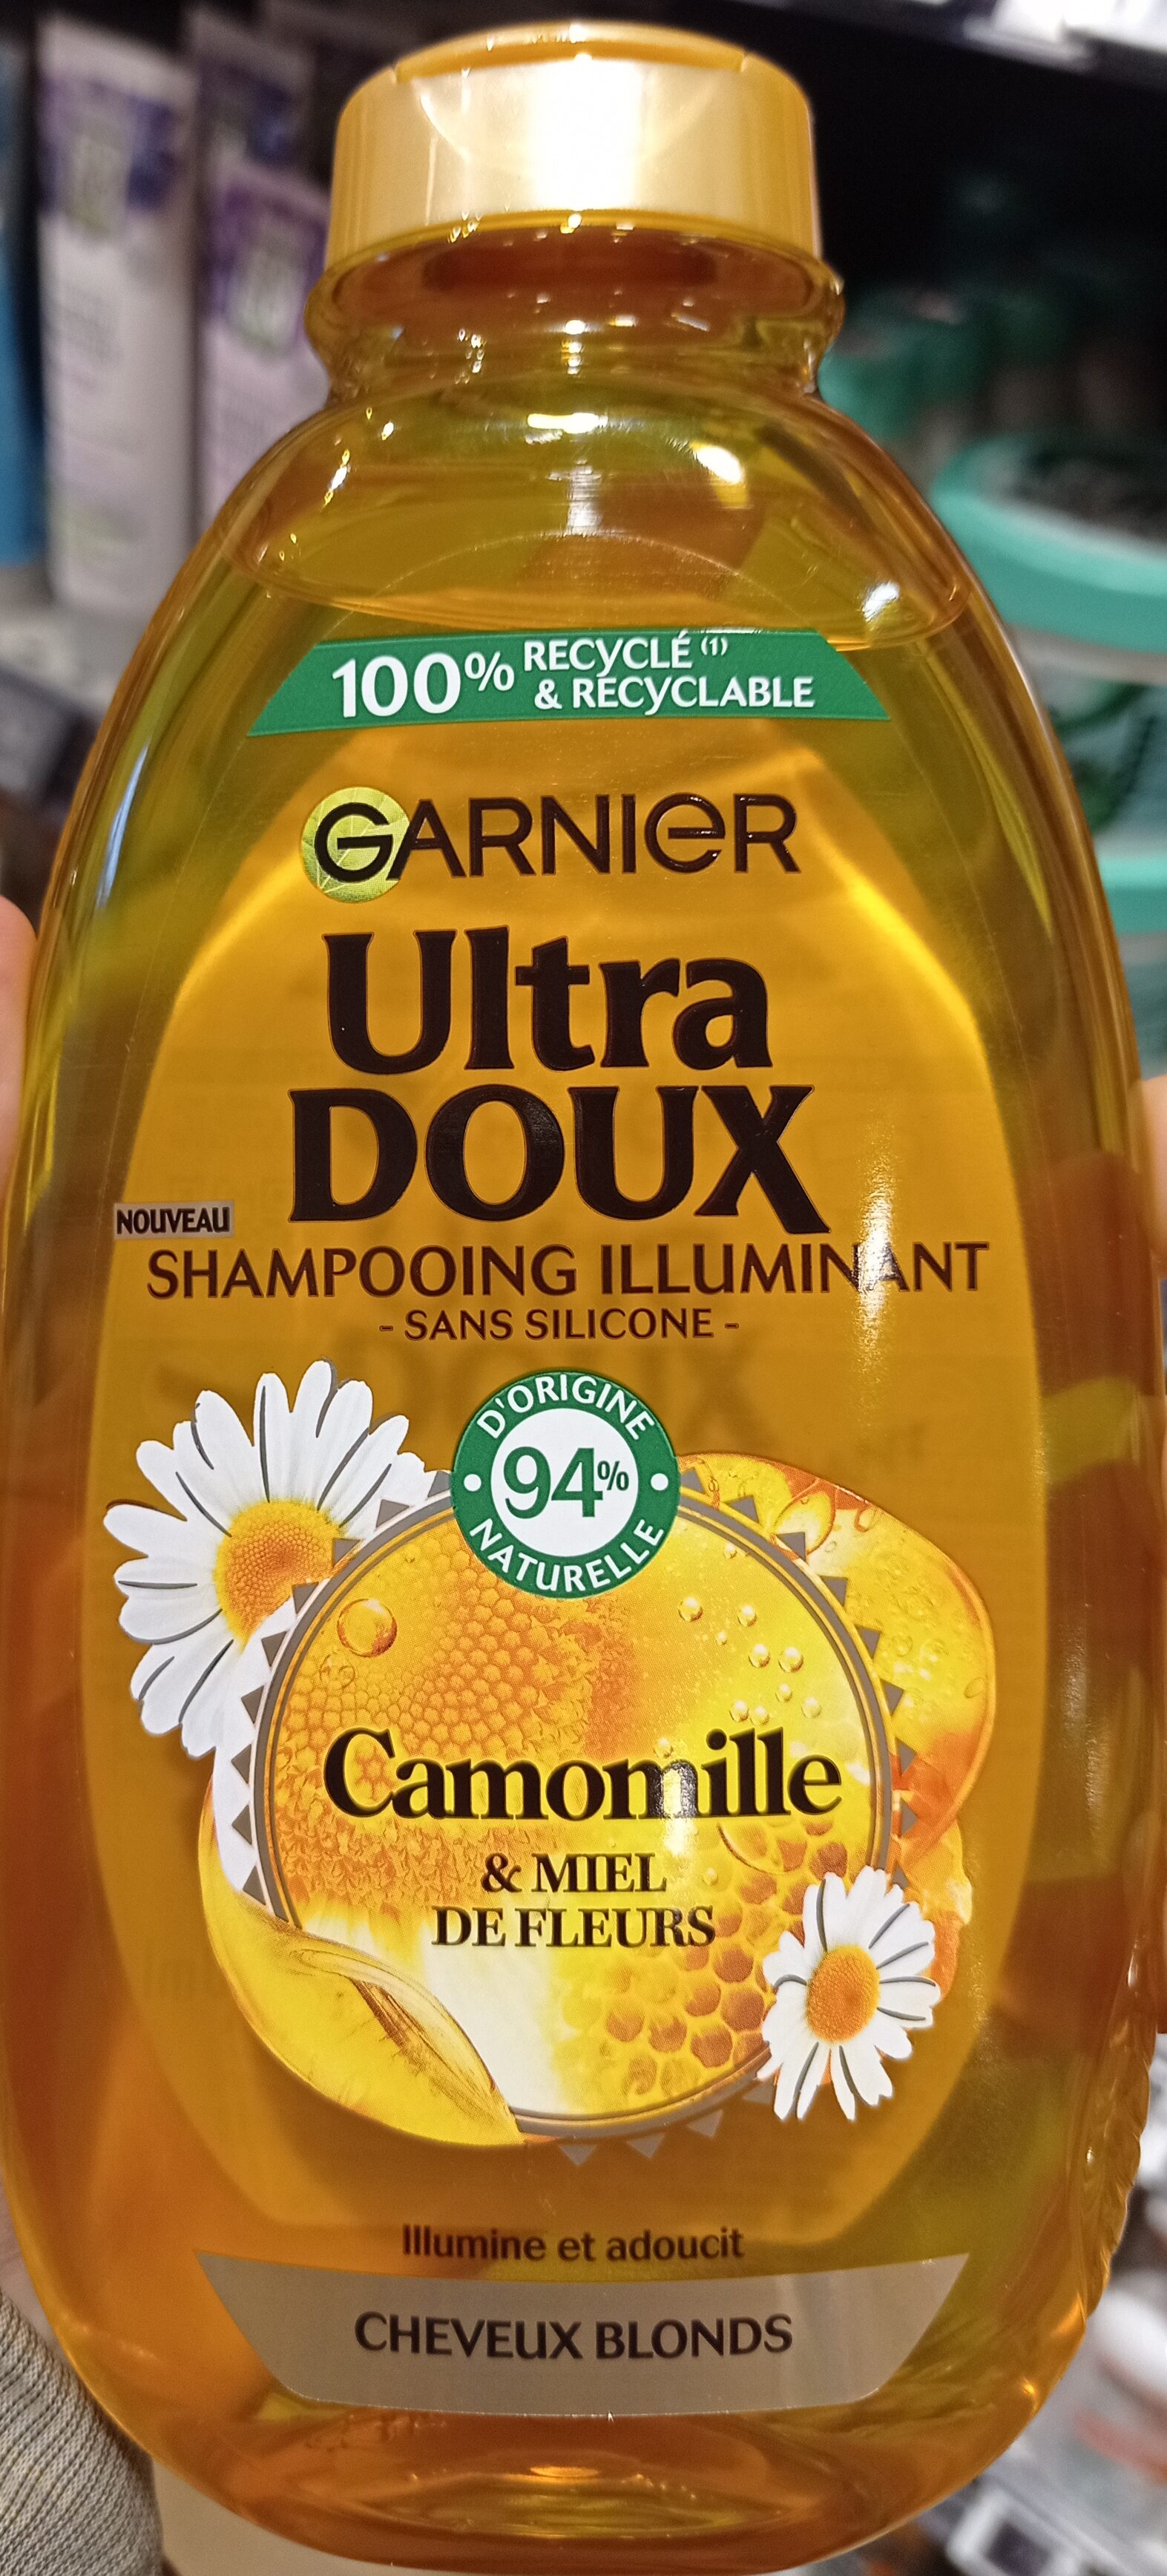 shampoing illuminant, camomille et miel de fleurs - Product - fr